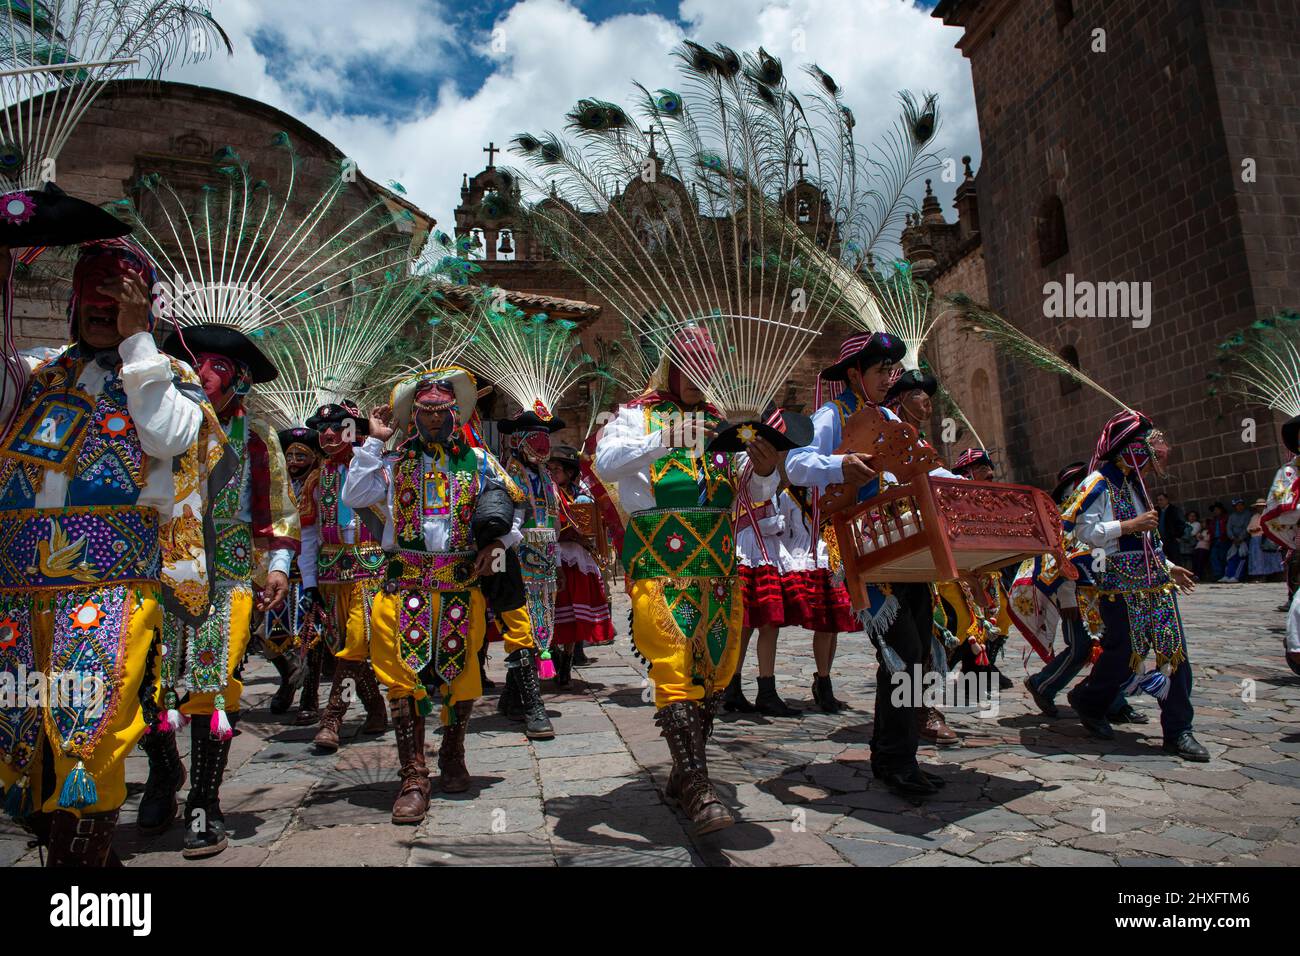 Cuzco, Perú - 25 de diciembre de 2013: Un grupo de hombres que visten ropa y máscaras tradicionales durante la Huaylia el día de Navidad frente a la cátara del Cuzco Foto de stock